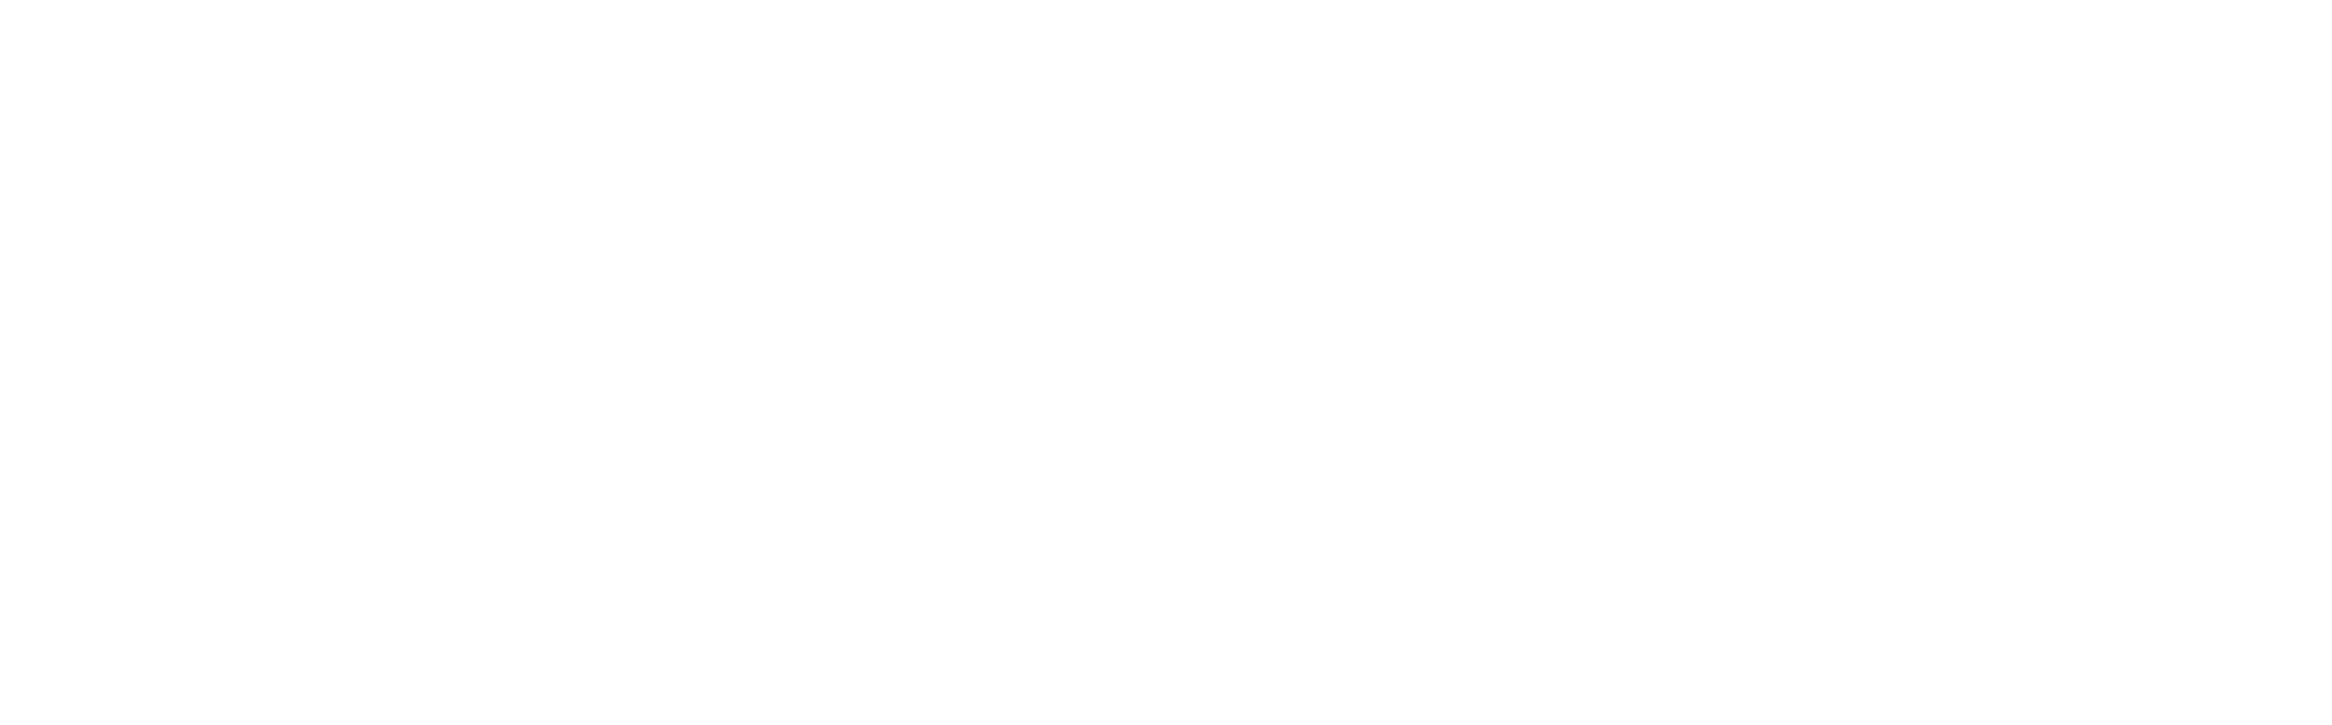 logo_patkol-2018_w